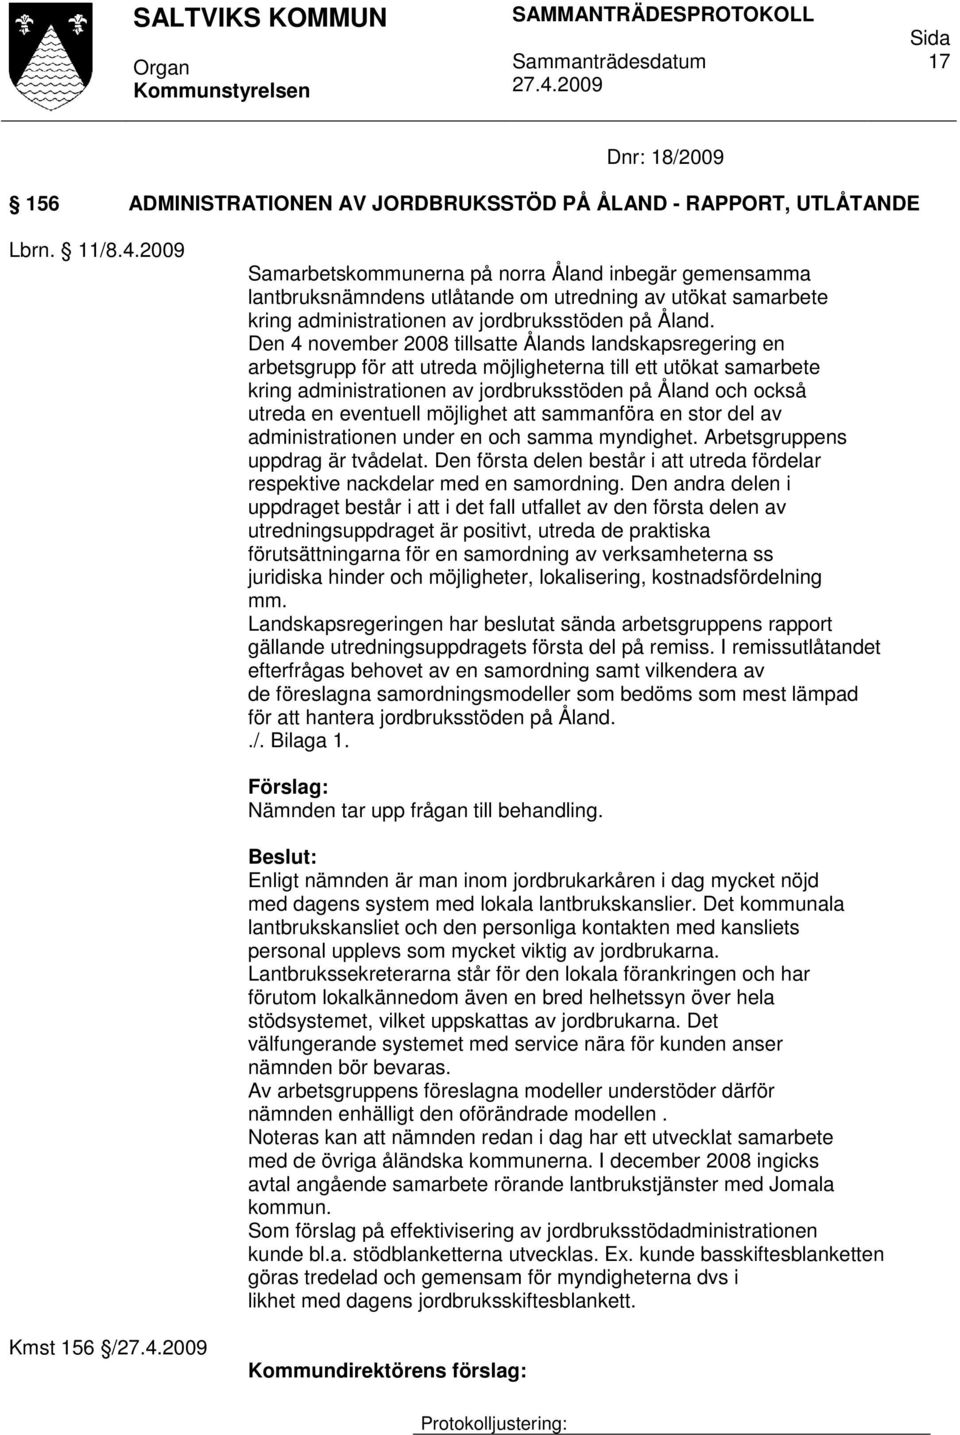 Den 4 november 2008 tillsatte Ålands landskapsregering en arbetsgrupp för att utreda möjligheterna till ett utökat samarbete kring administrationen av jordbruksstöden på Åland och också utreda en